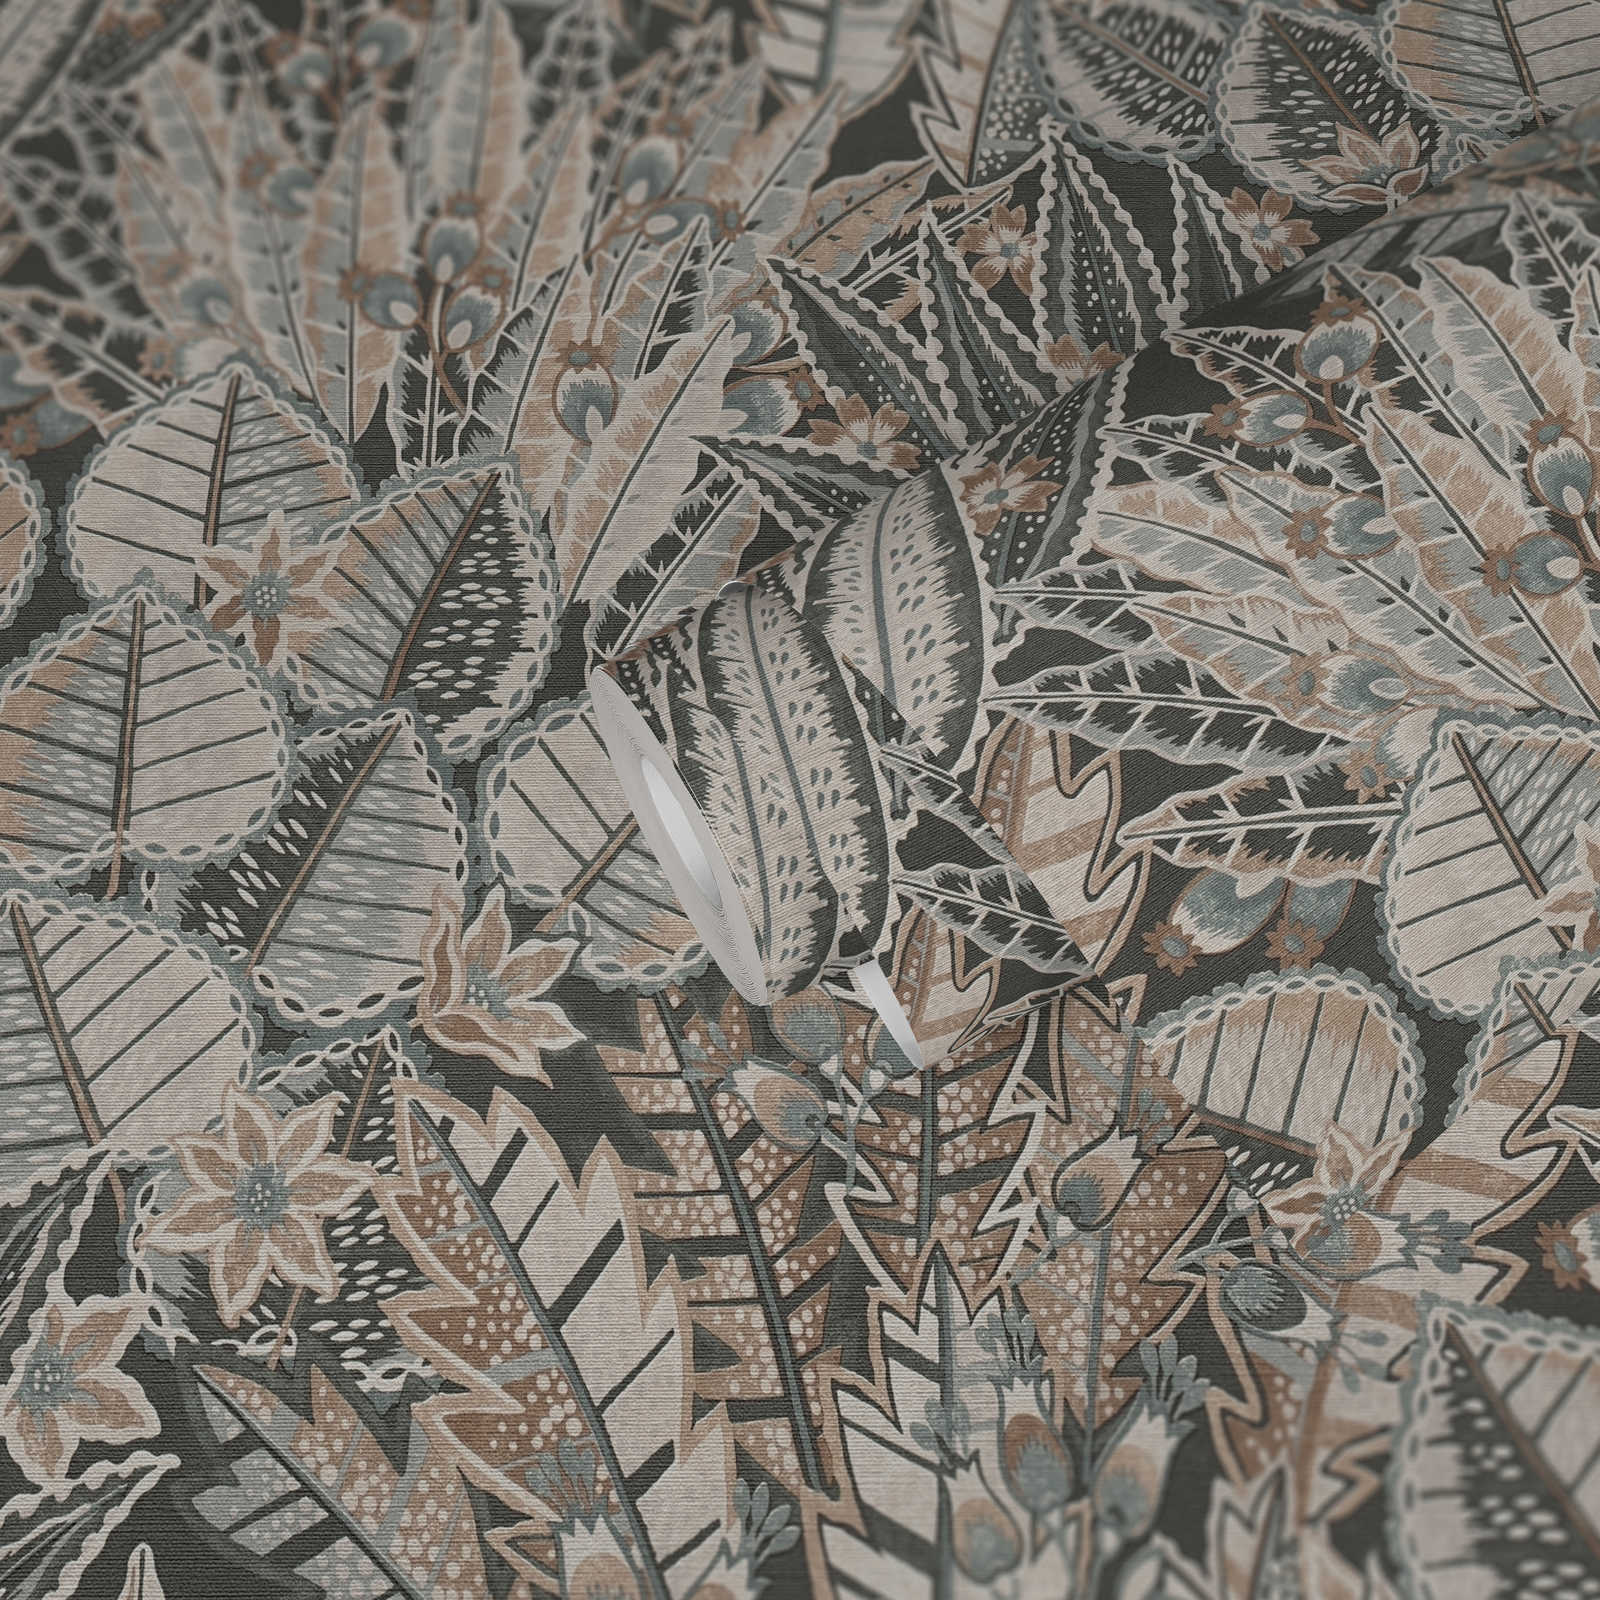             Motivo a foglie in stile astratto su carta da parati in tessuto non tessuto - nero, marrone, grigio
        